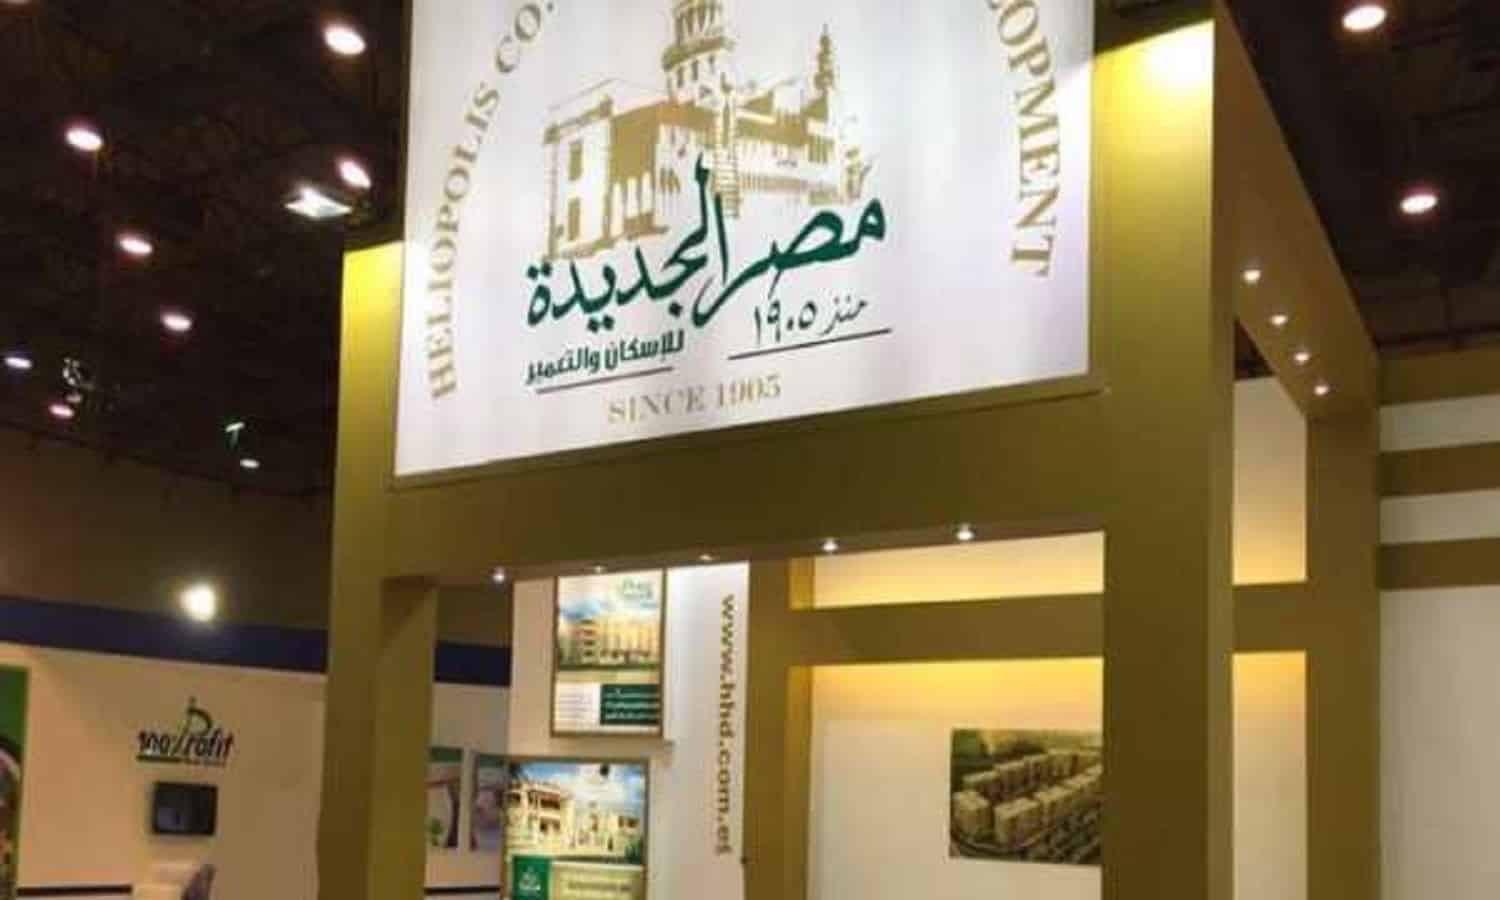 مصر الجديدة للإسكان توقع العقد النهائي لبيع أرض هليوبارك
